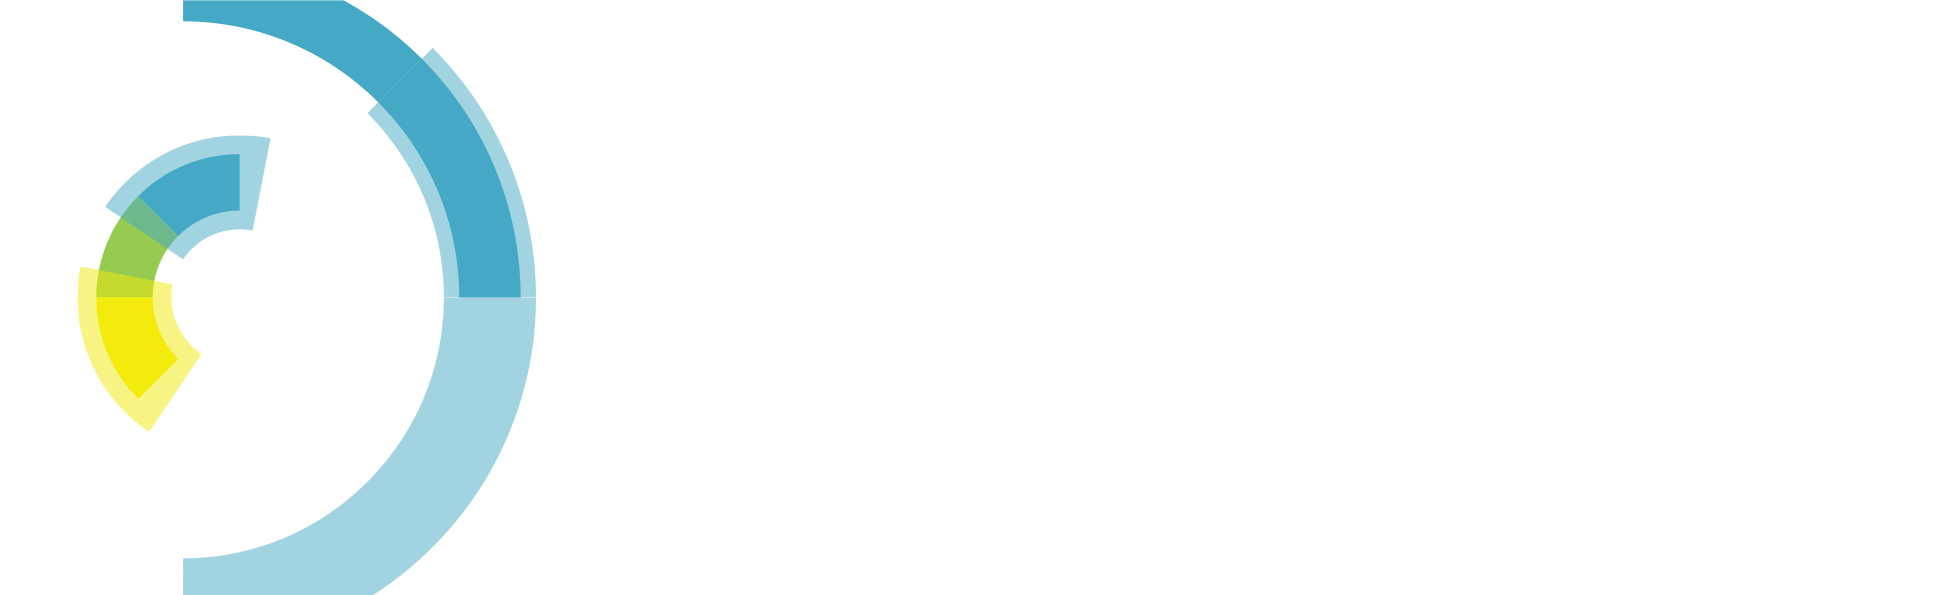 PCCP